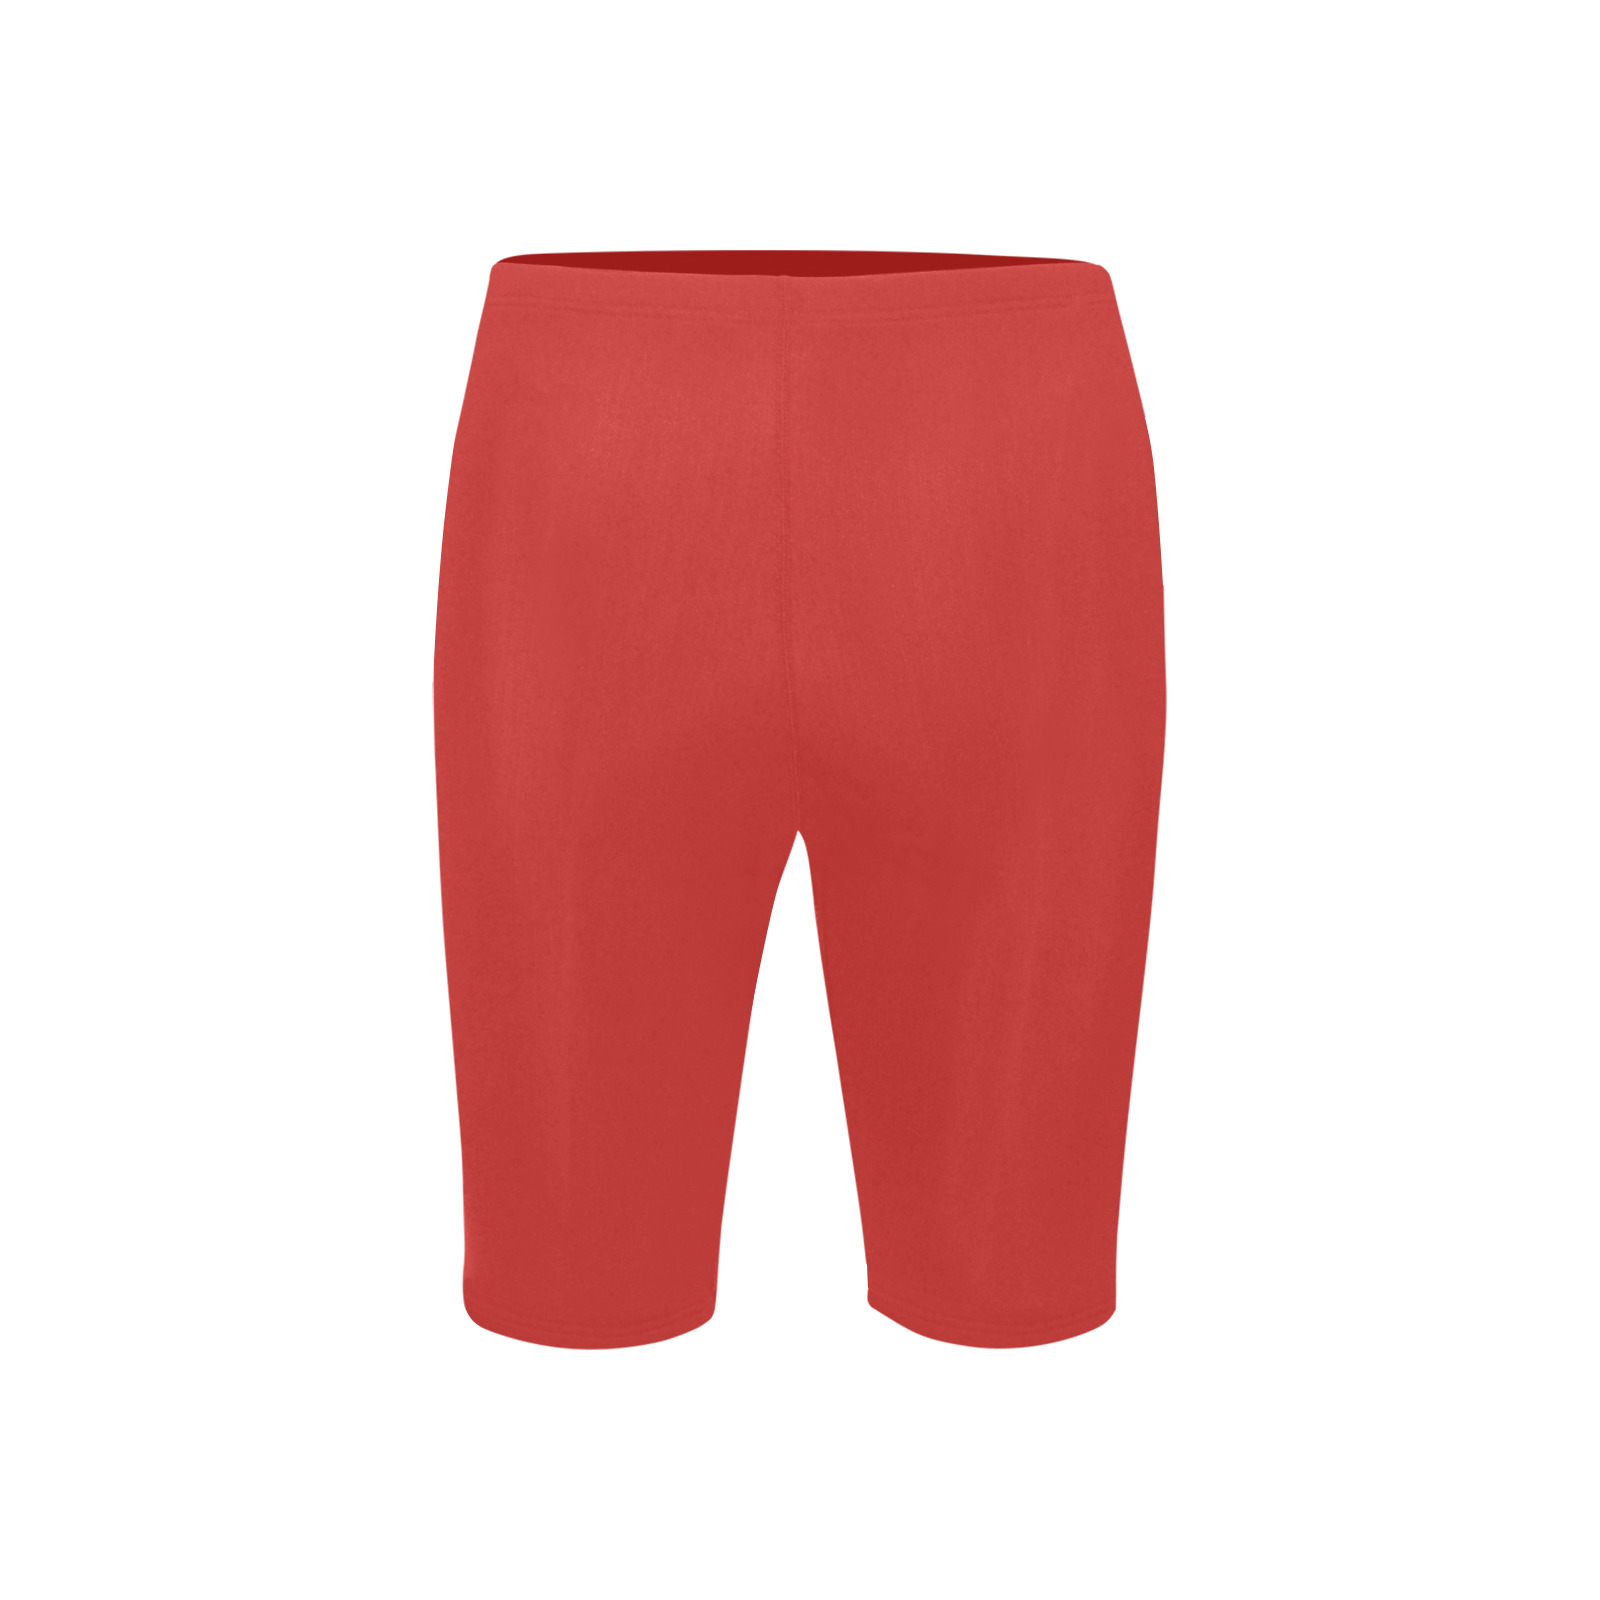 RED Men's Knee Length Swimming Trunks (Model L58)